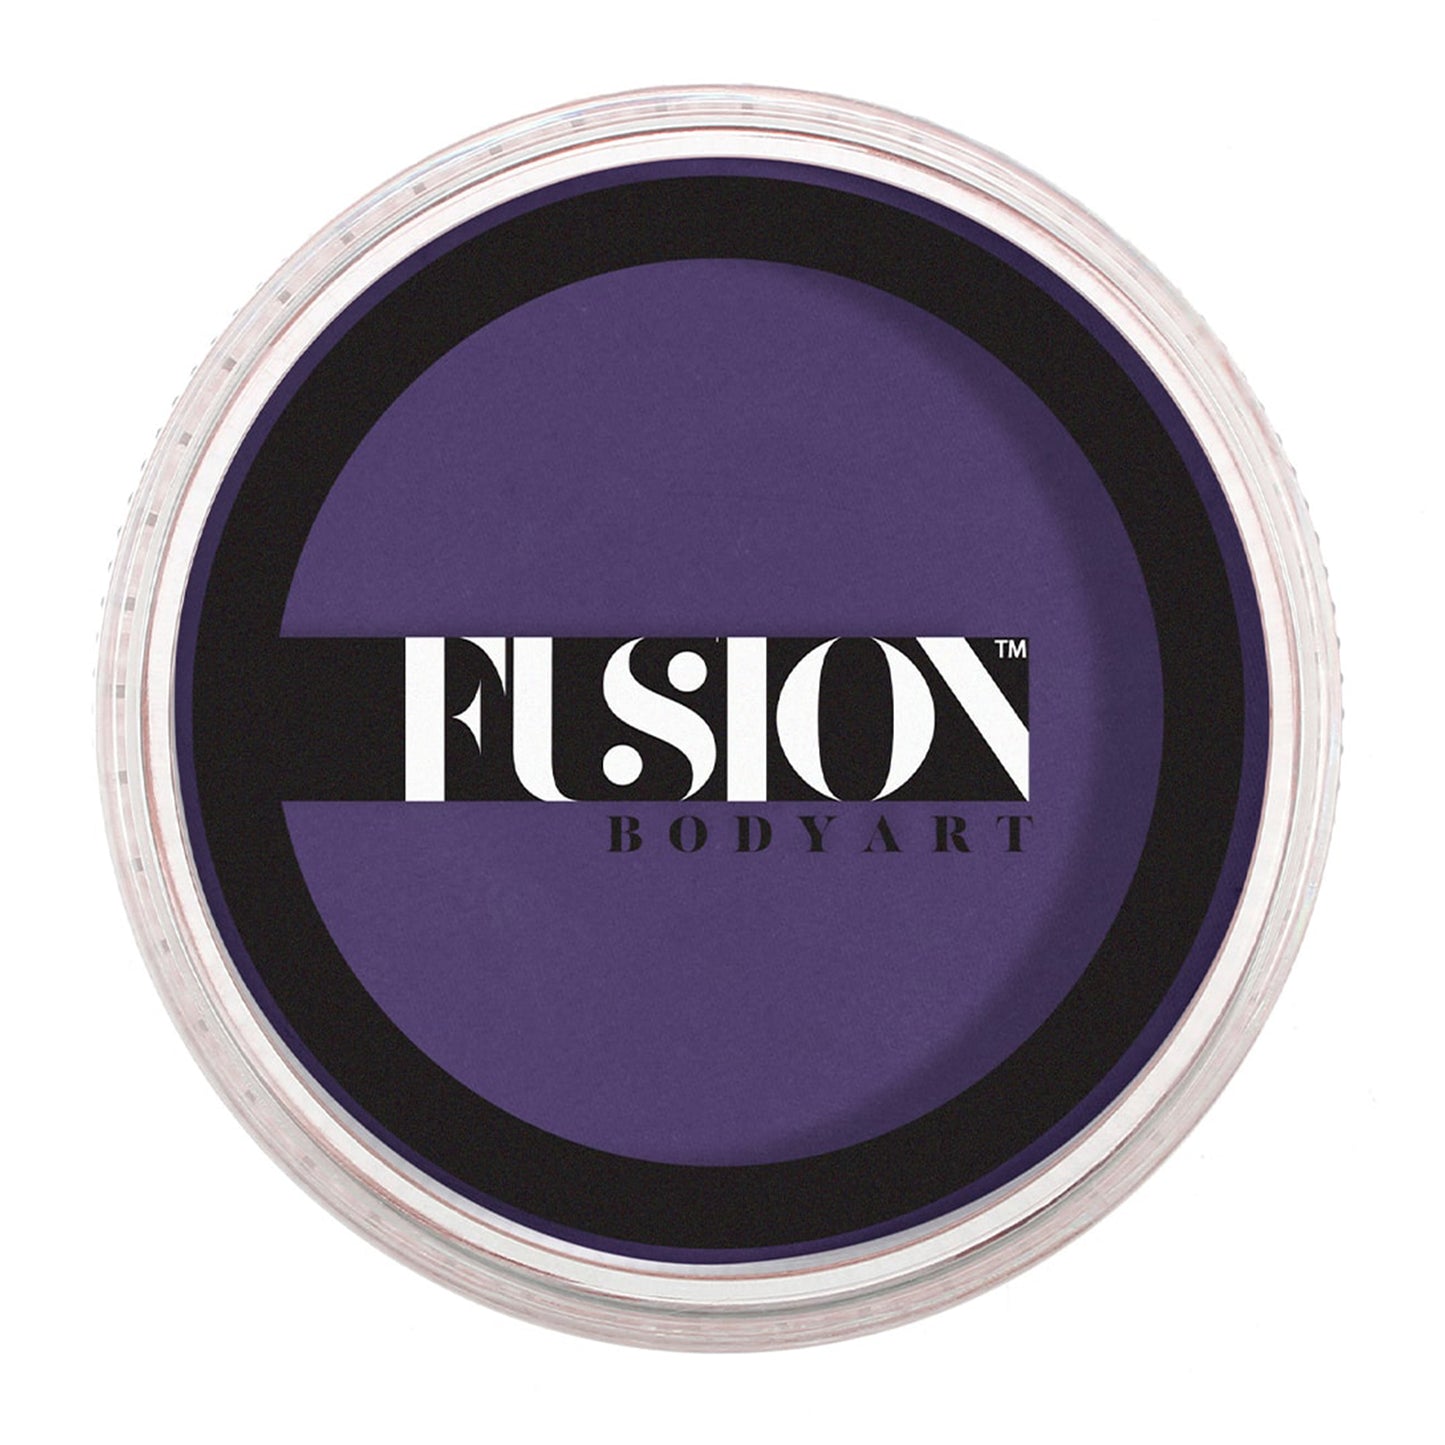 Fusion Body Art Face & Body Paint - Prime Purple Passion